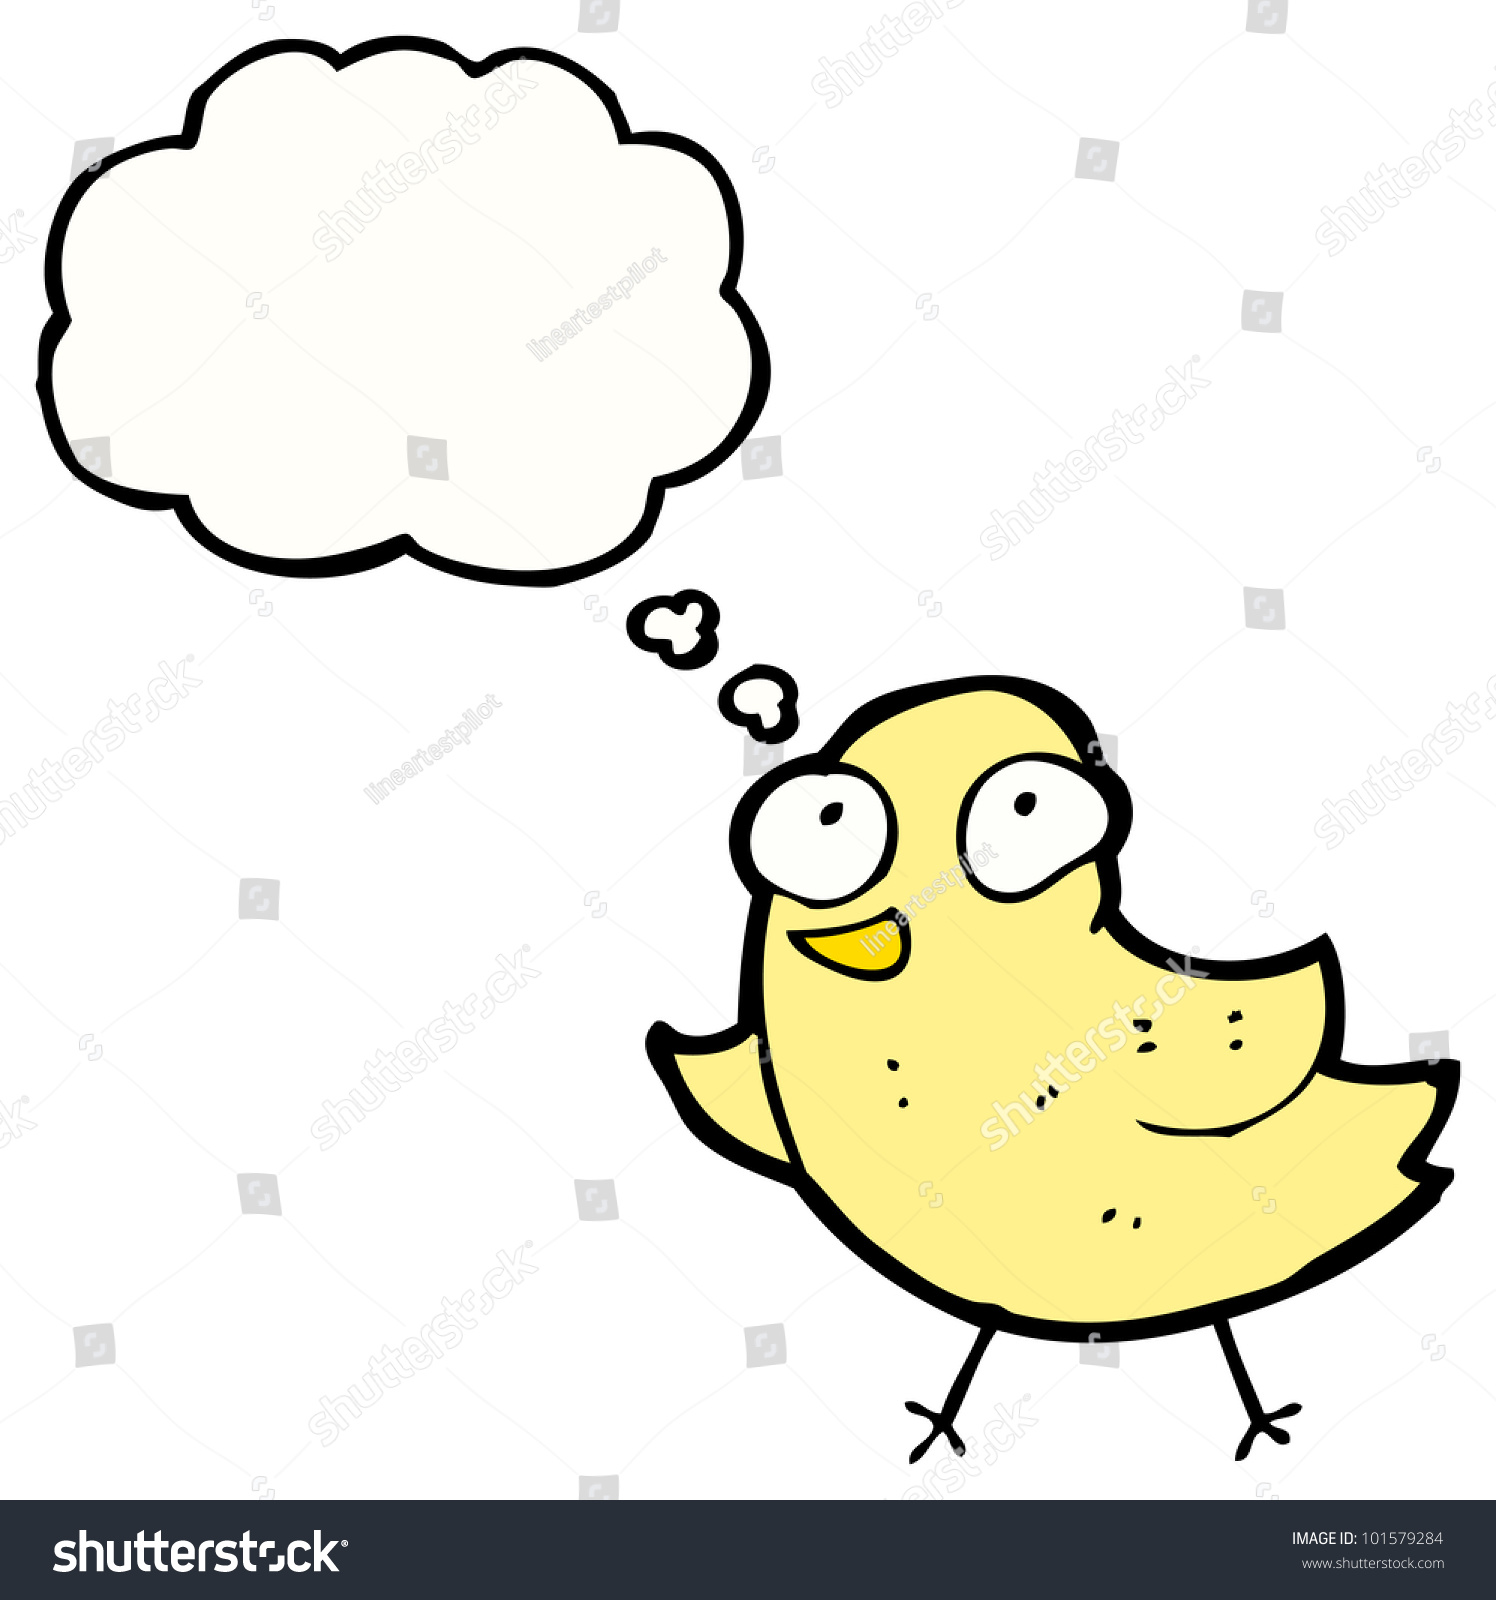 Cartoon Cute Bird Stock Photo 101579284 : Shutterstock